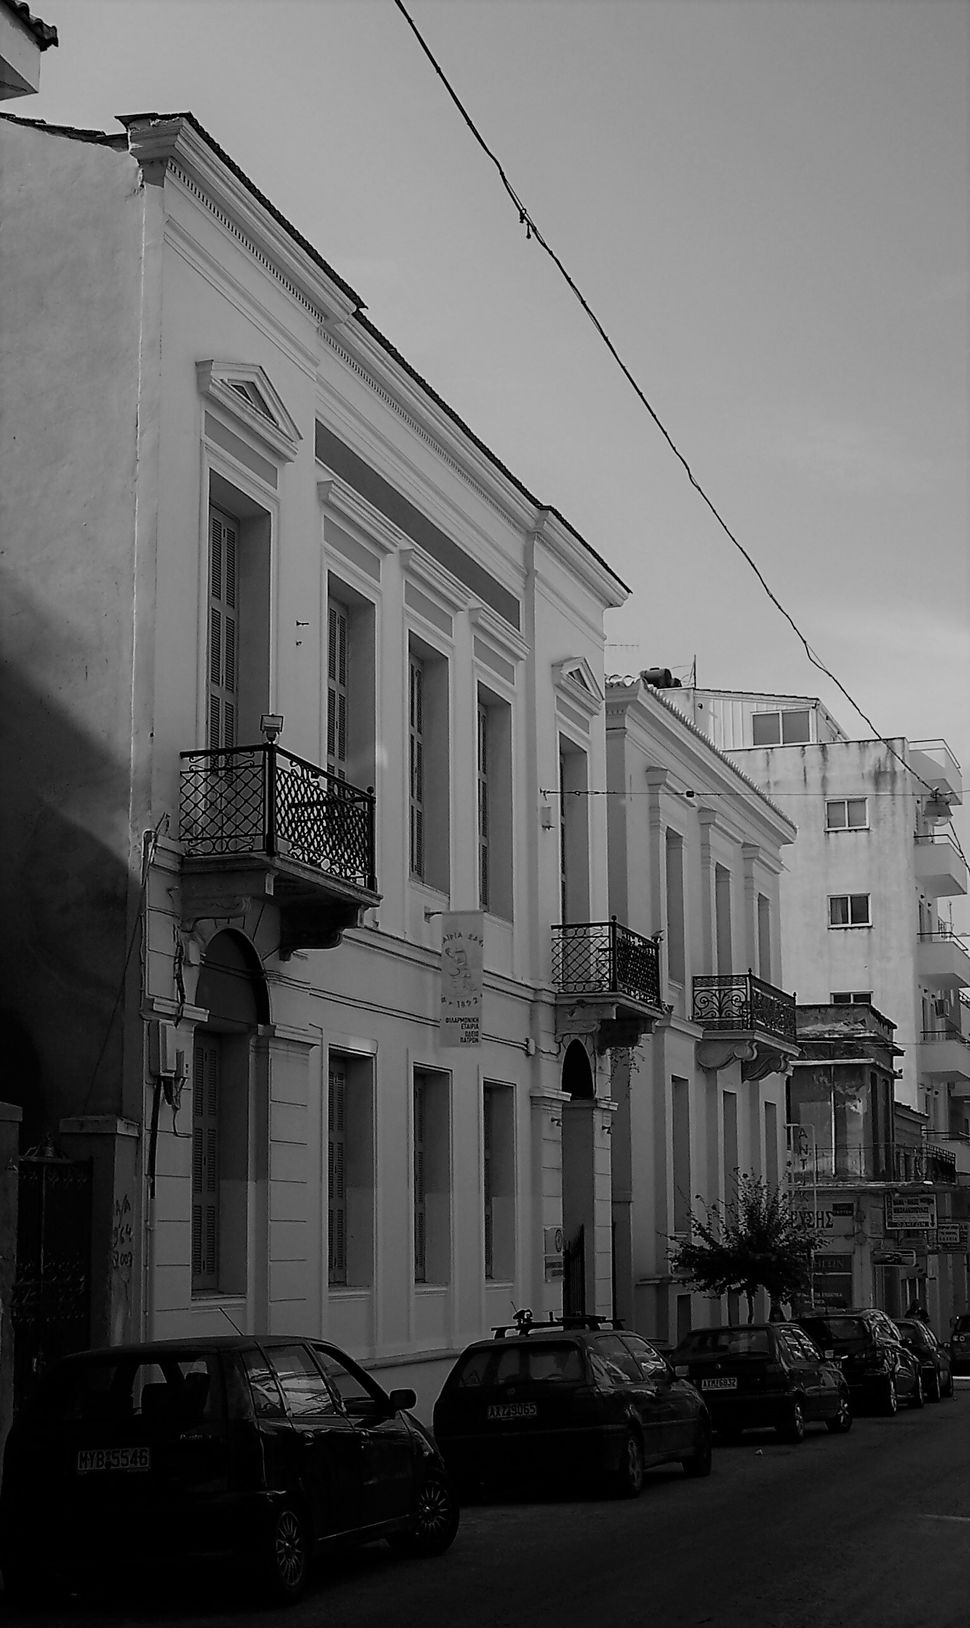 Το νεοκλασσικό κτήριο επί της οδού Ρήγα Φεραίου σε παλαιότερη φωτογραφία